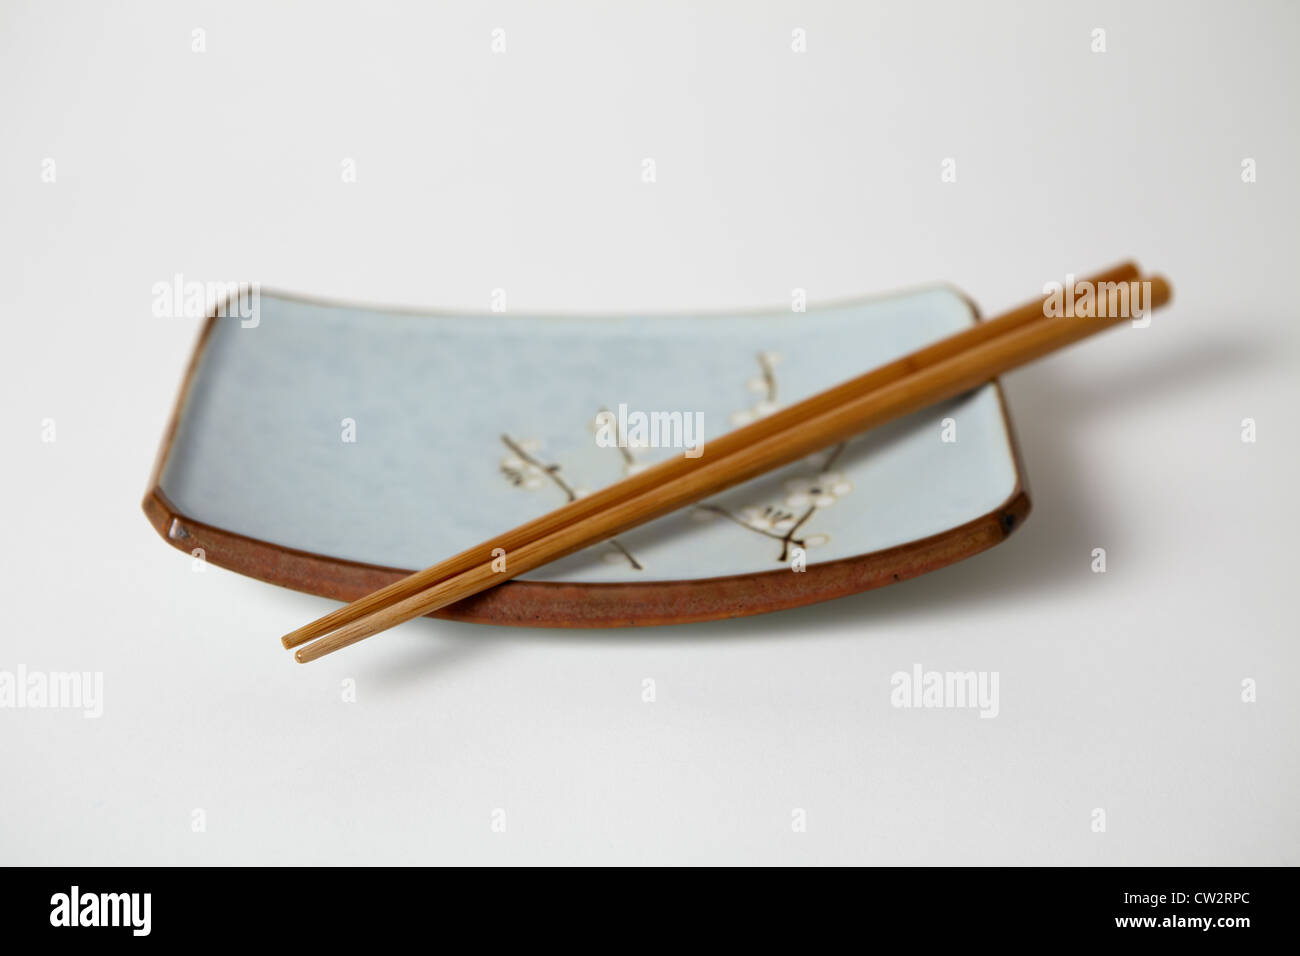 Japanisches Gericht mit Stäbchen Stockfoto